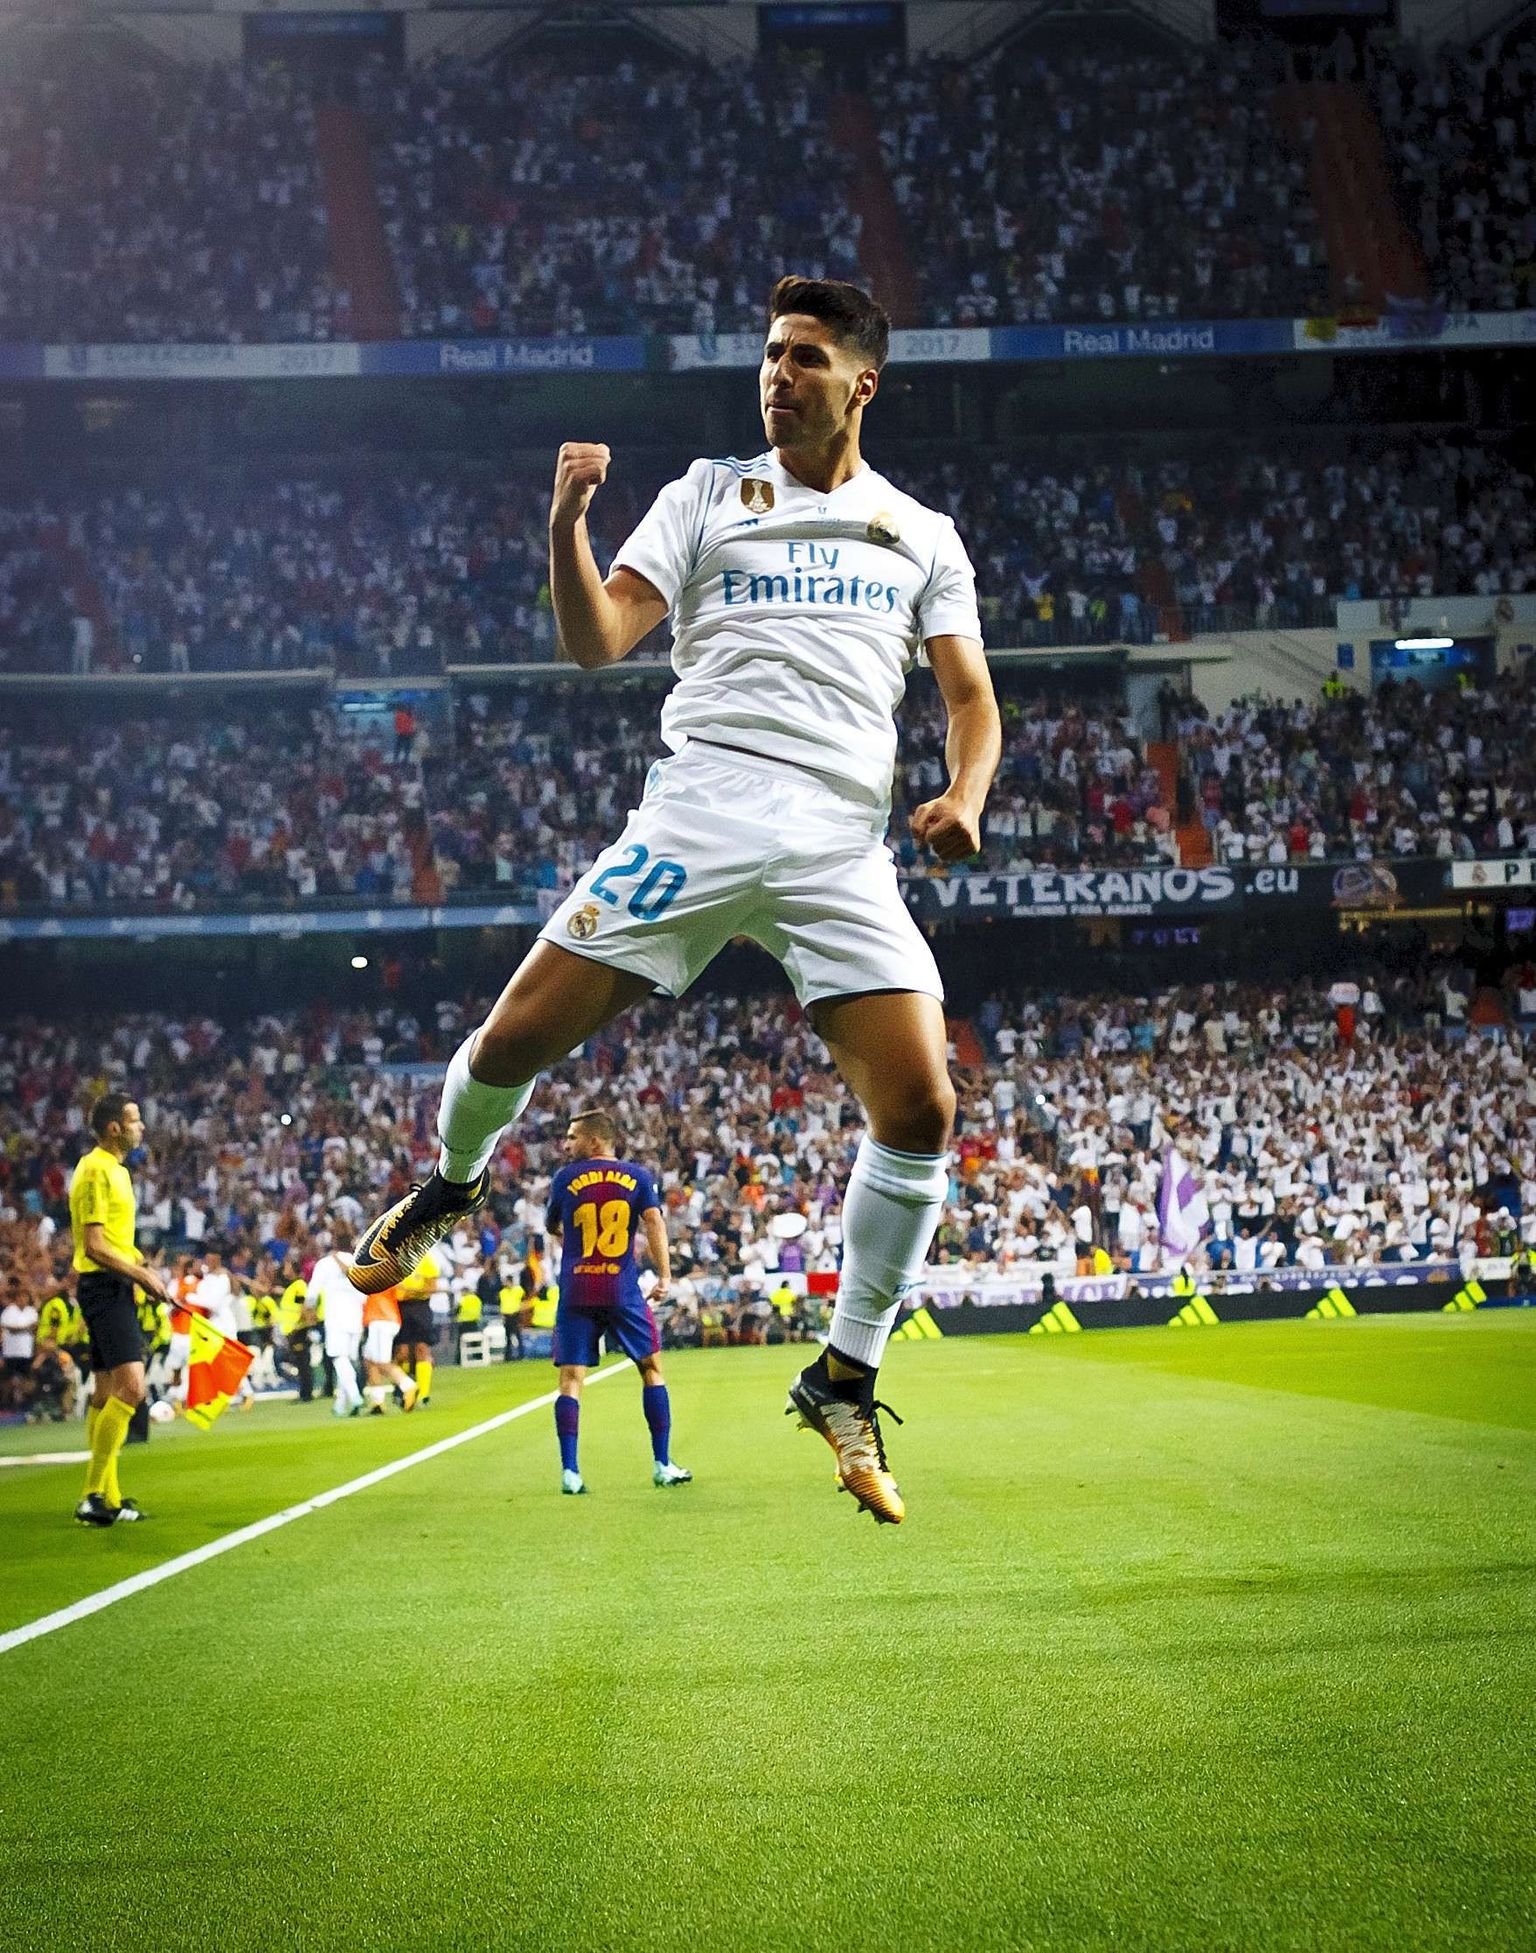 Tõsiseks mängumeheks küpsenud Marco Asensio näol on Madridi Reali rivistus muutunud veelgi tugevamaks ja mitmekesisemaks. 21aastane ääreründaja lõi Hispaania superkarikafinaali mõlemas mängus oivalise värava.